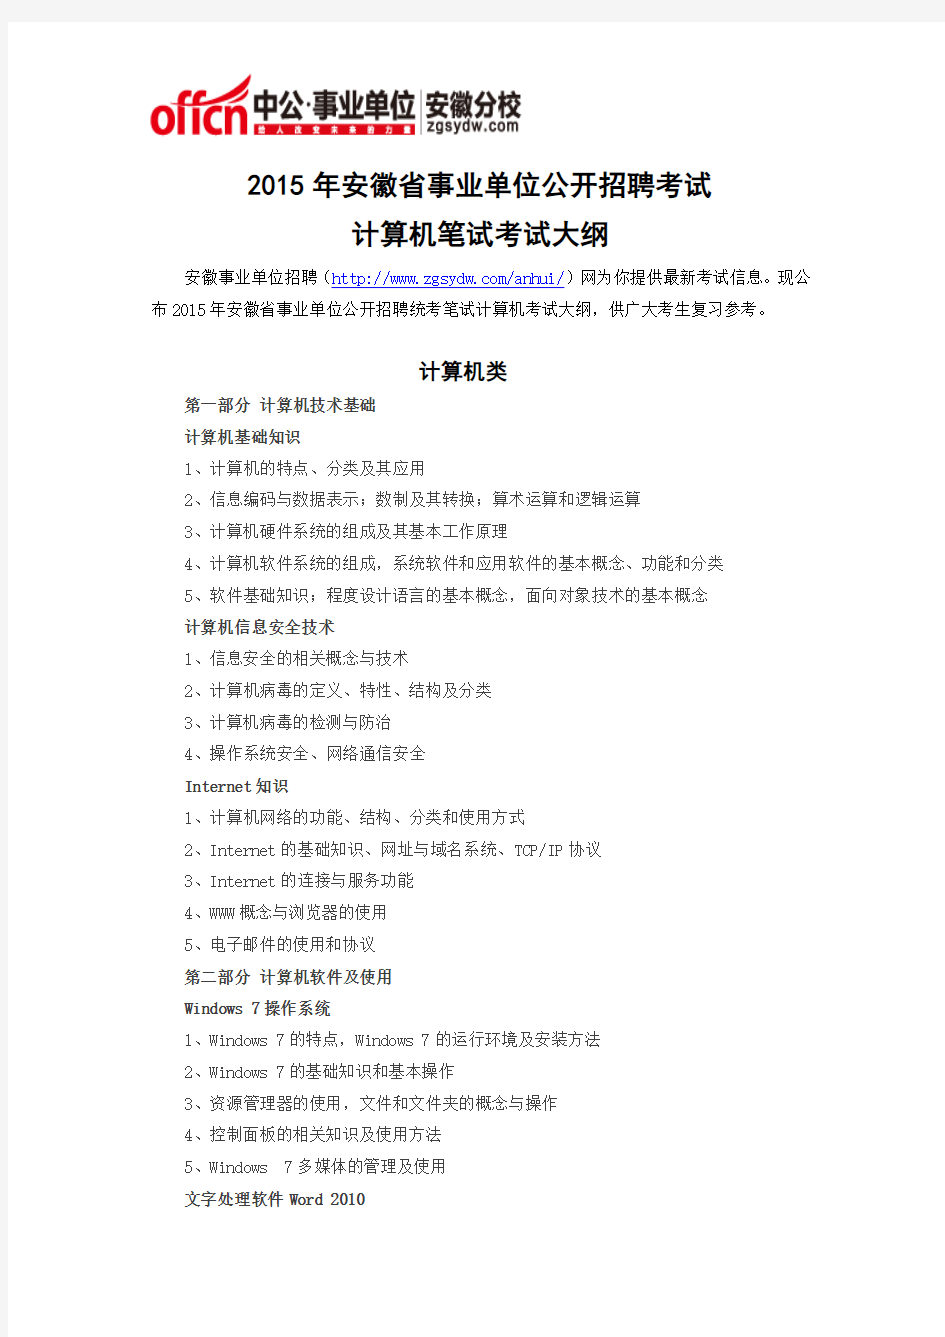 2015年安徽省事业单位公开招聘考试计算机笔试考试大纲